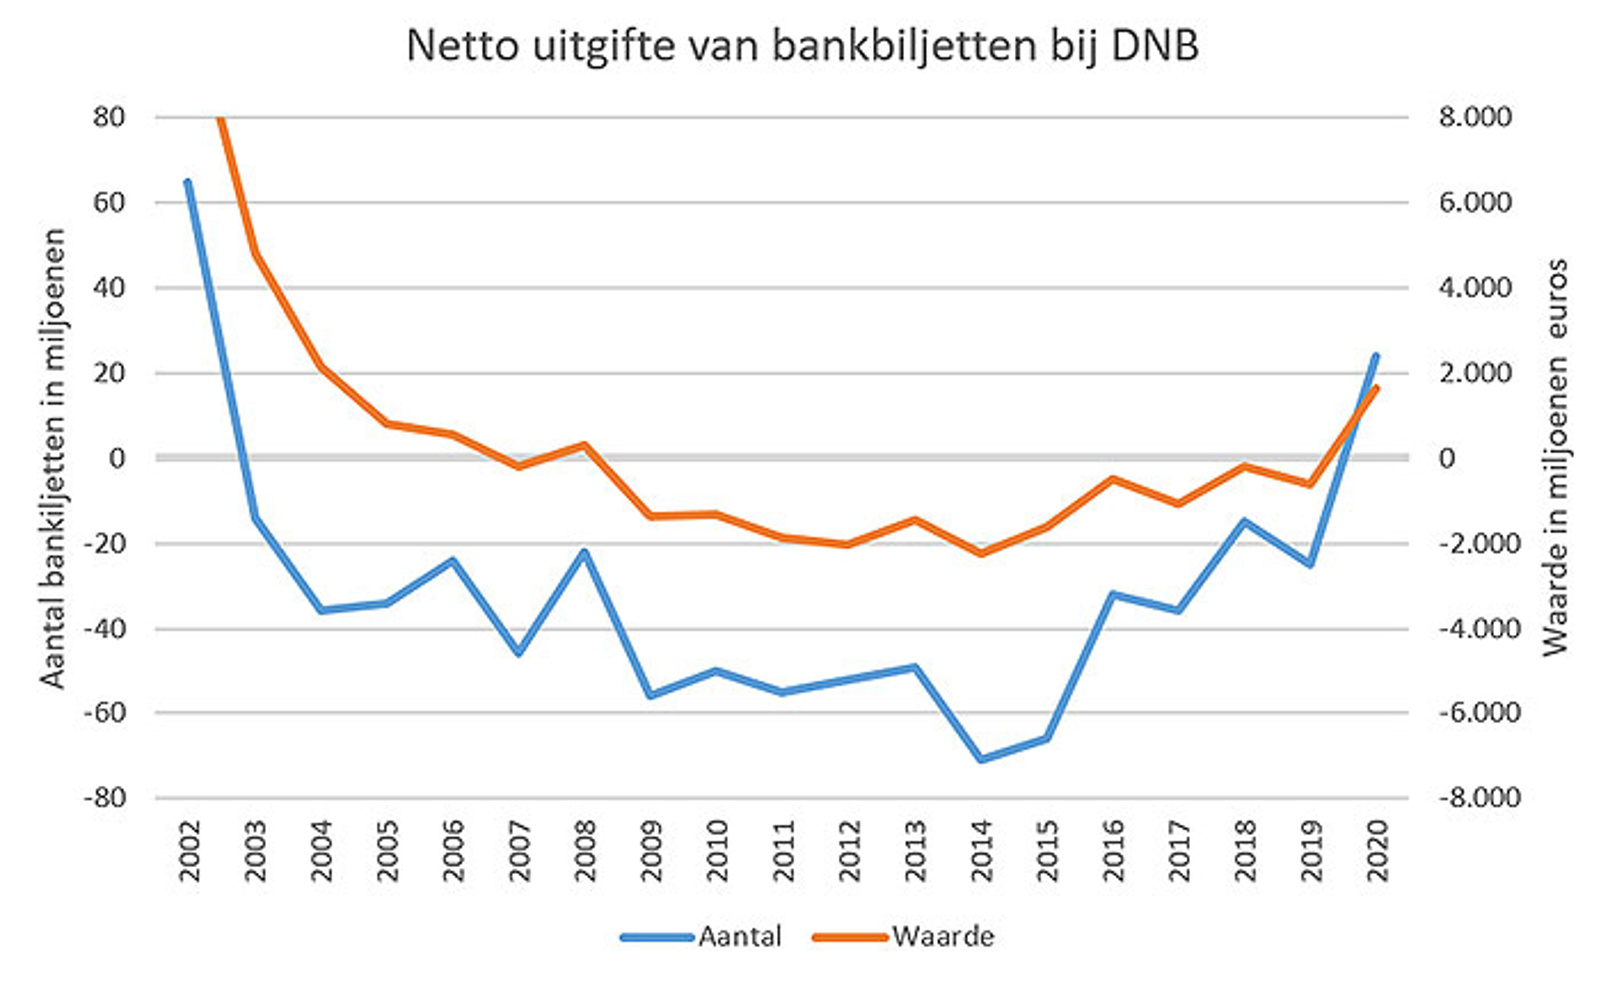 Netto uitgifte van bankbiljetten bij DNB